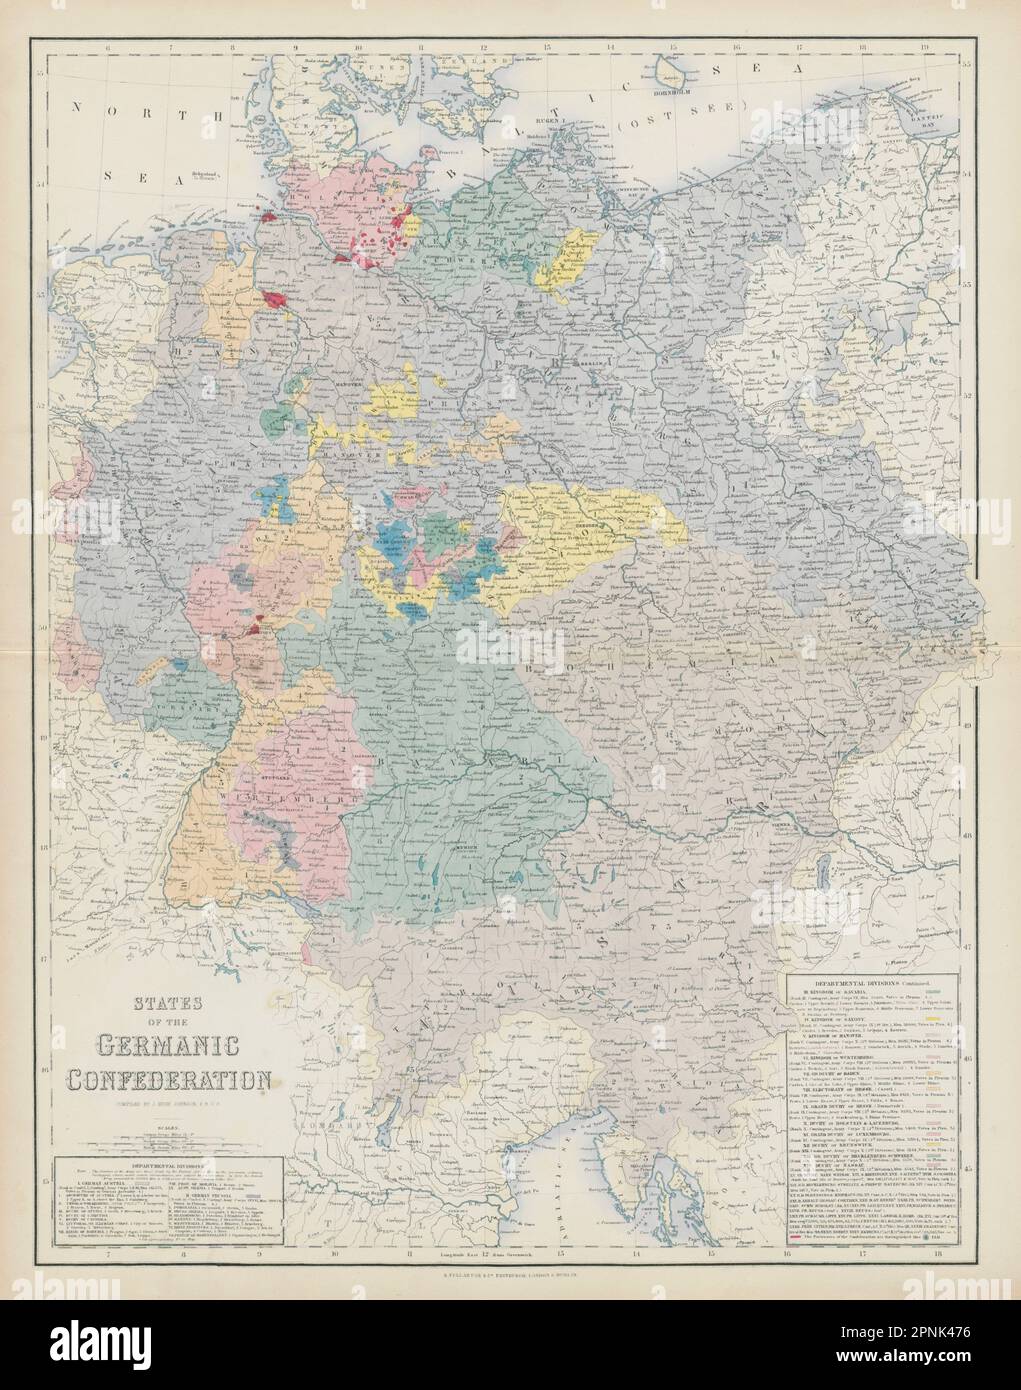 États de la Confédération germanique. Allemagne Autriche Tchéquie. CARTE DE SWANSTON 1860 Banque D'Images